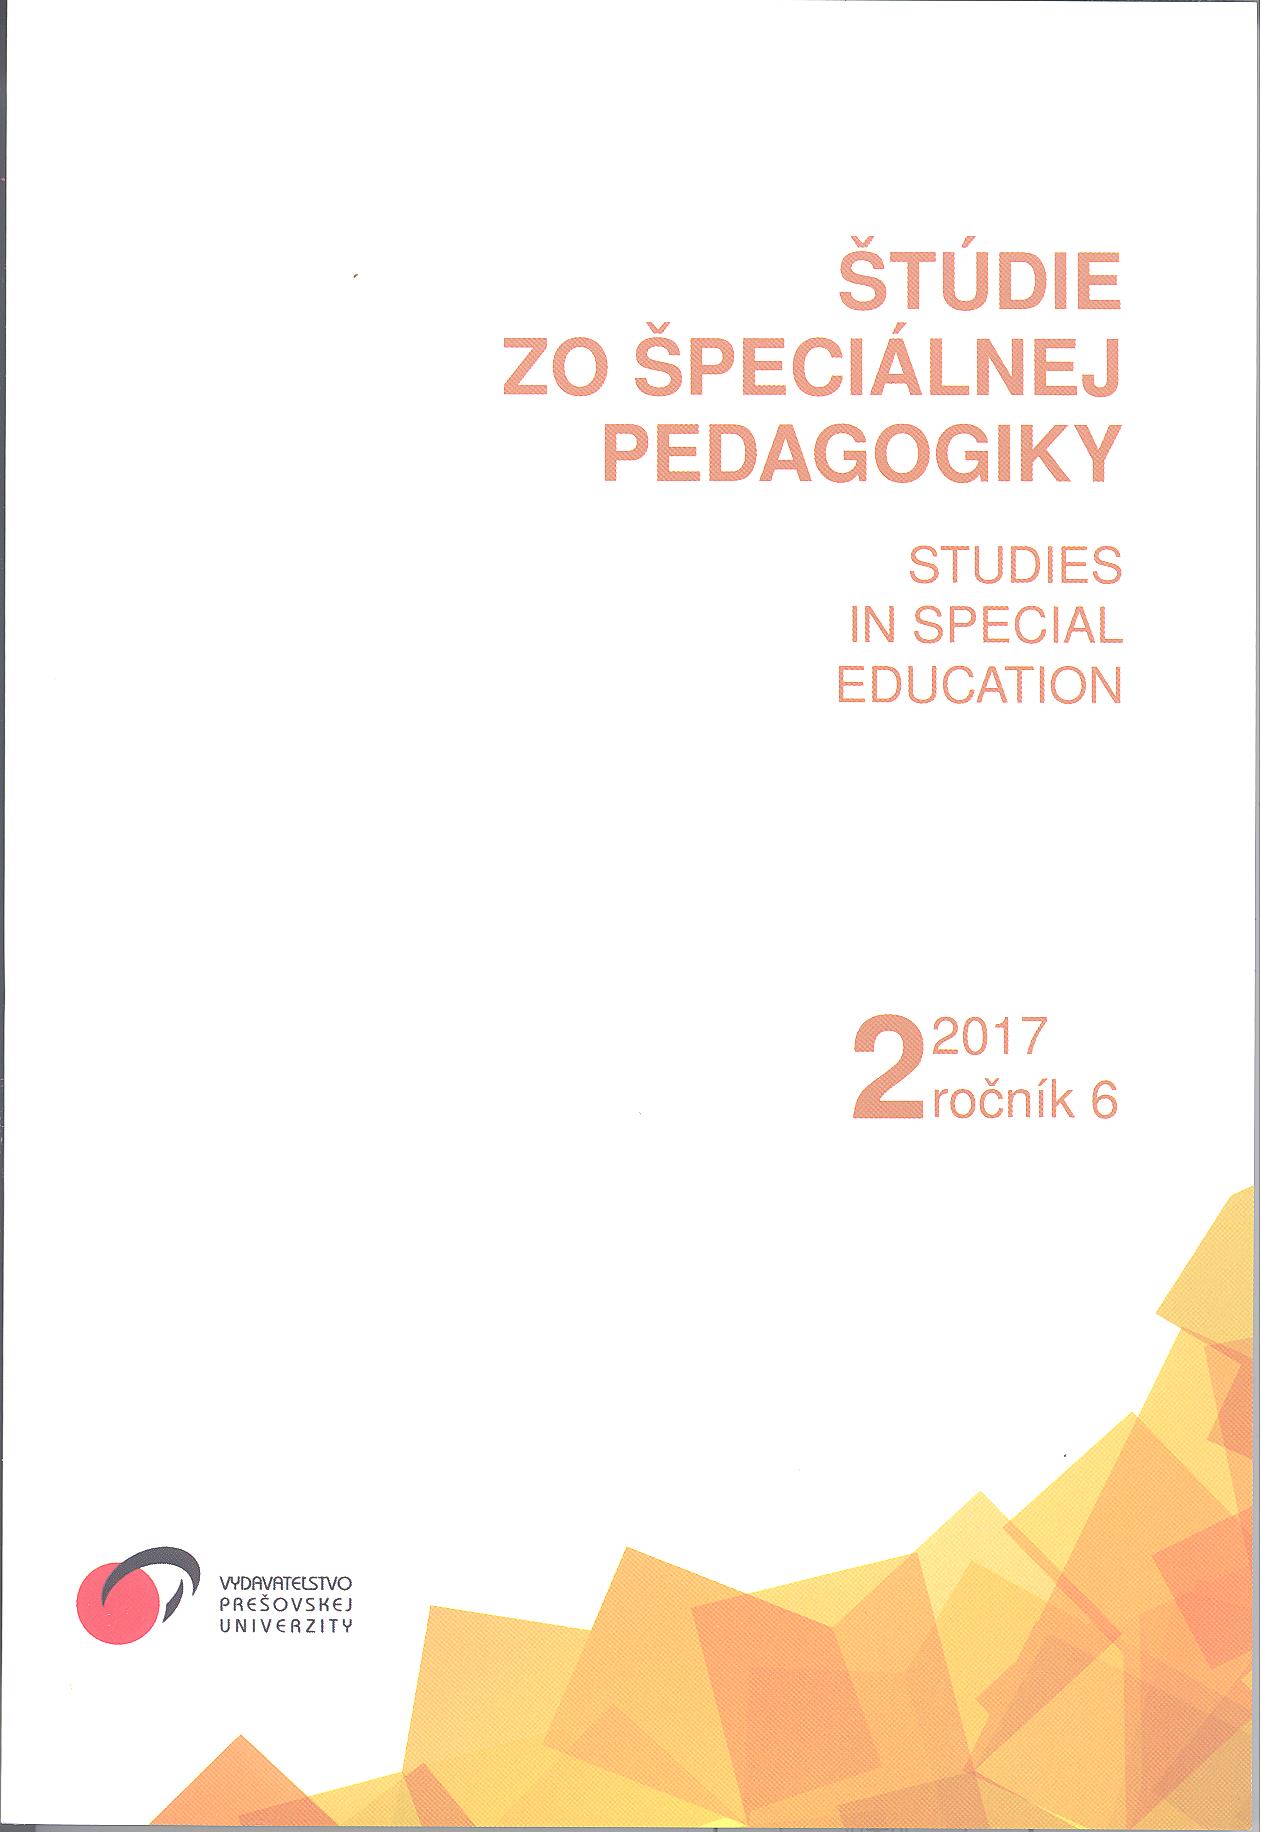 SOLOVSKÁ, V. A KOL.: Rozvoj dovedností dospělých lidí
s mentálním postižením. Praha: Portál, 2013. 192 s. ISBN 978-80-262-0369-8. Cover Image